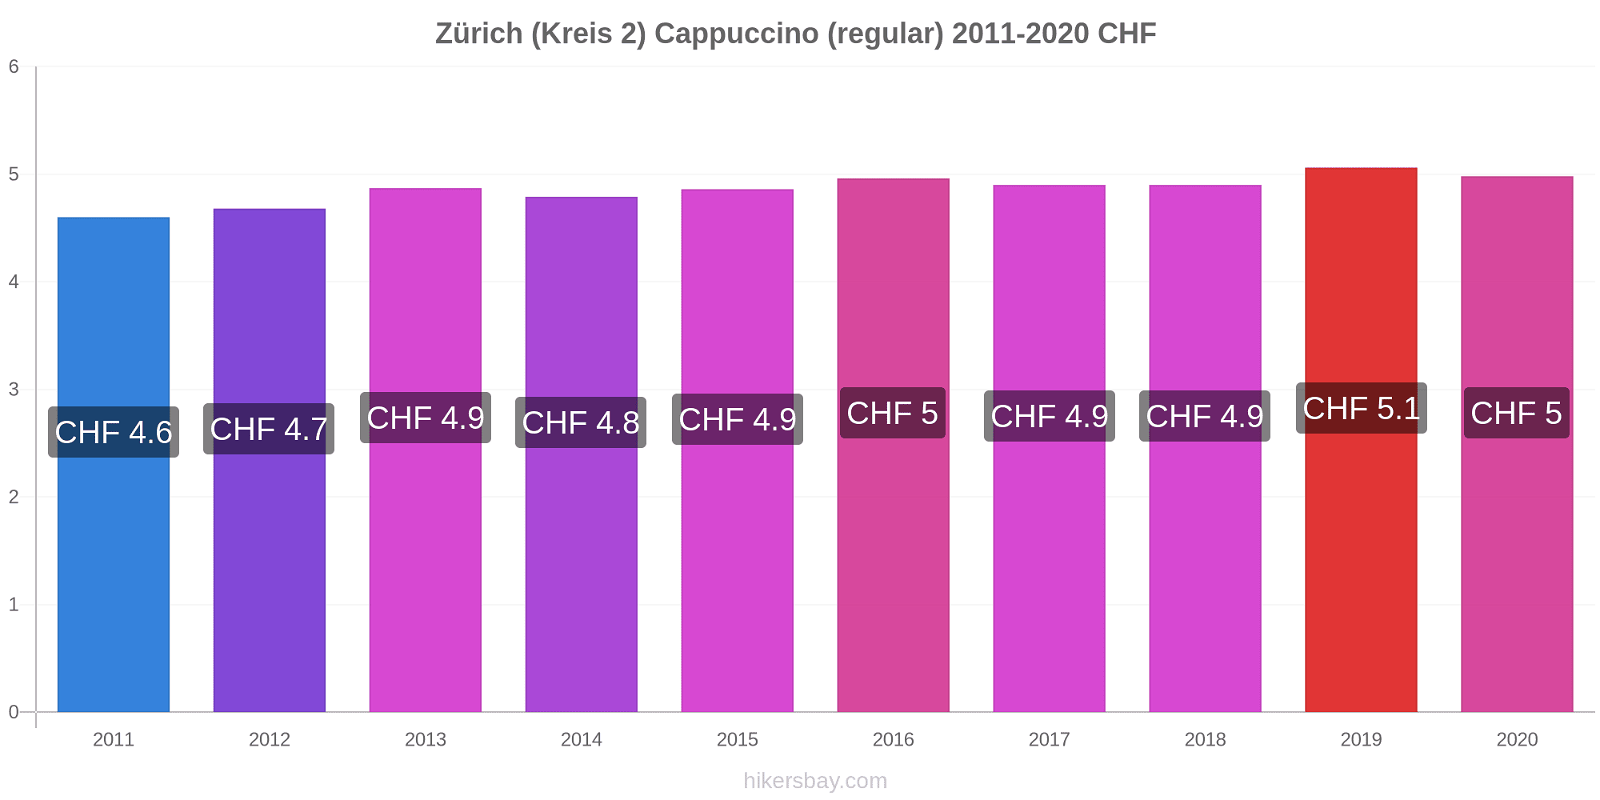 Zürich (Kreis 2) price changes Cappuccino (regular) hikersbay.com